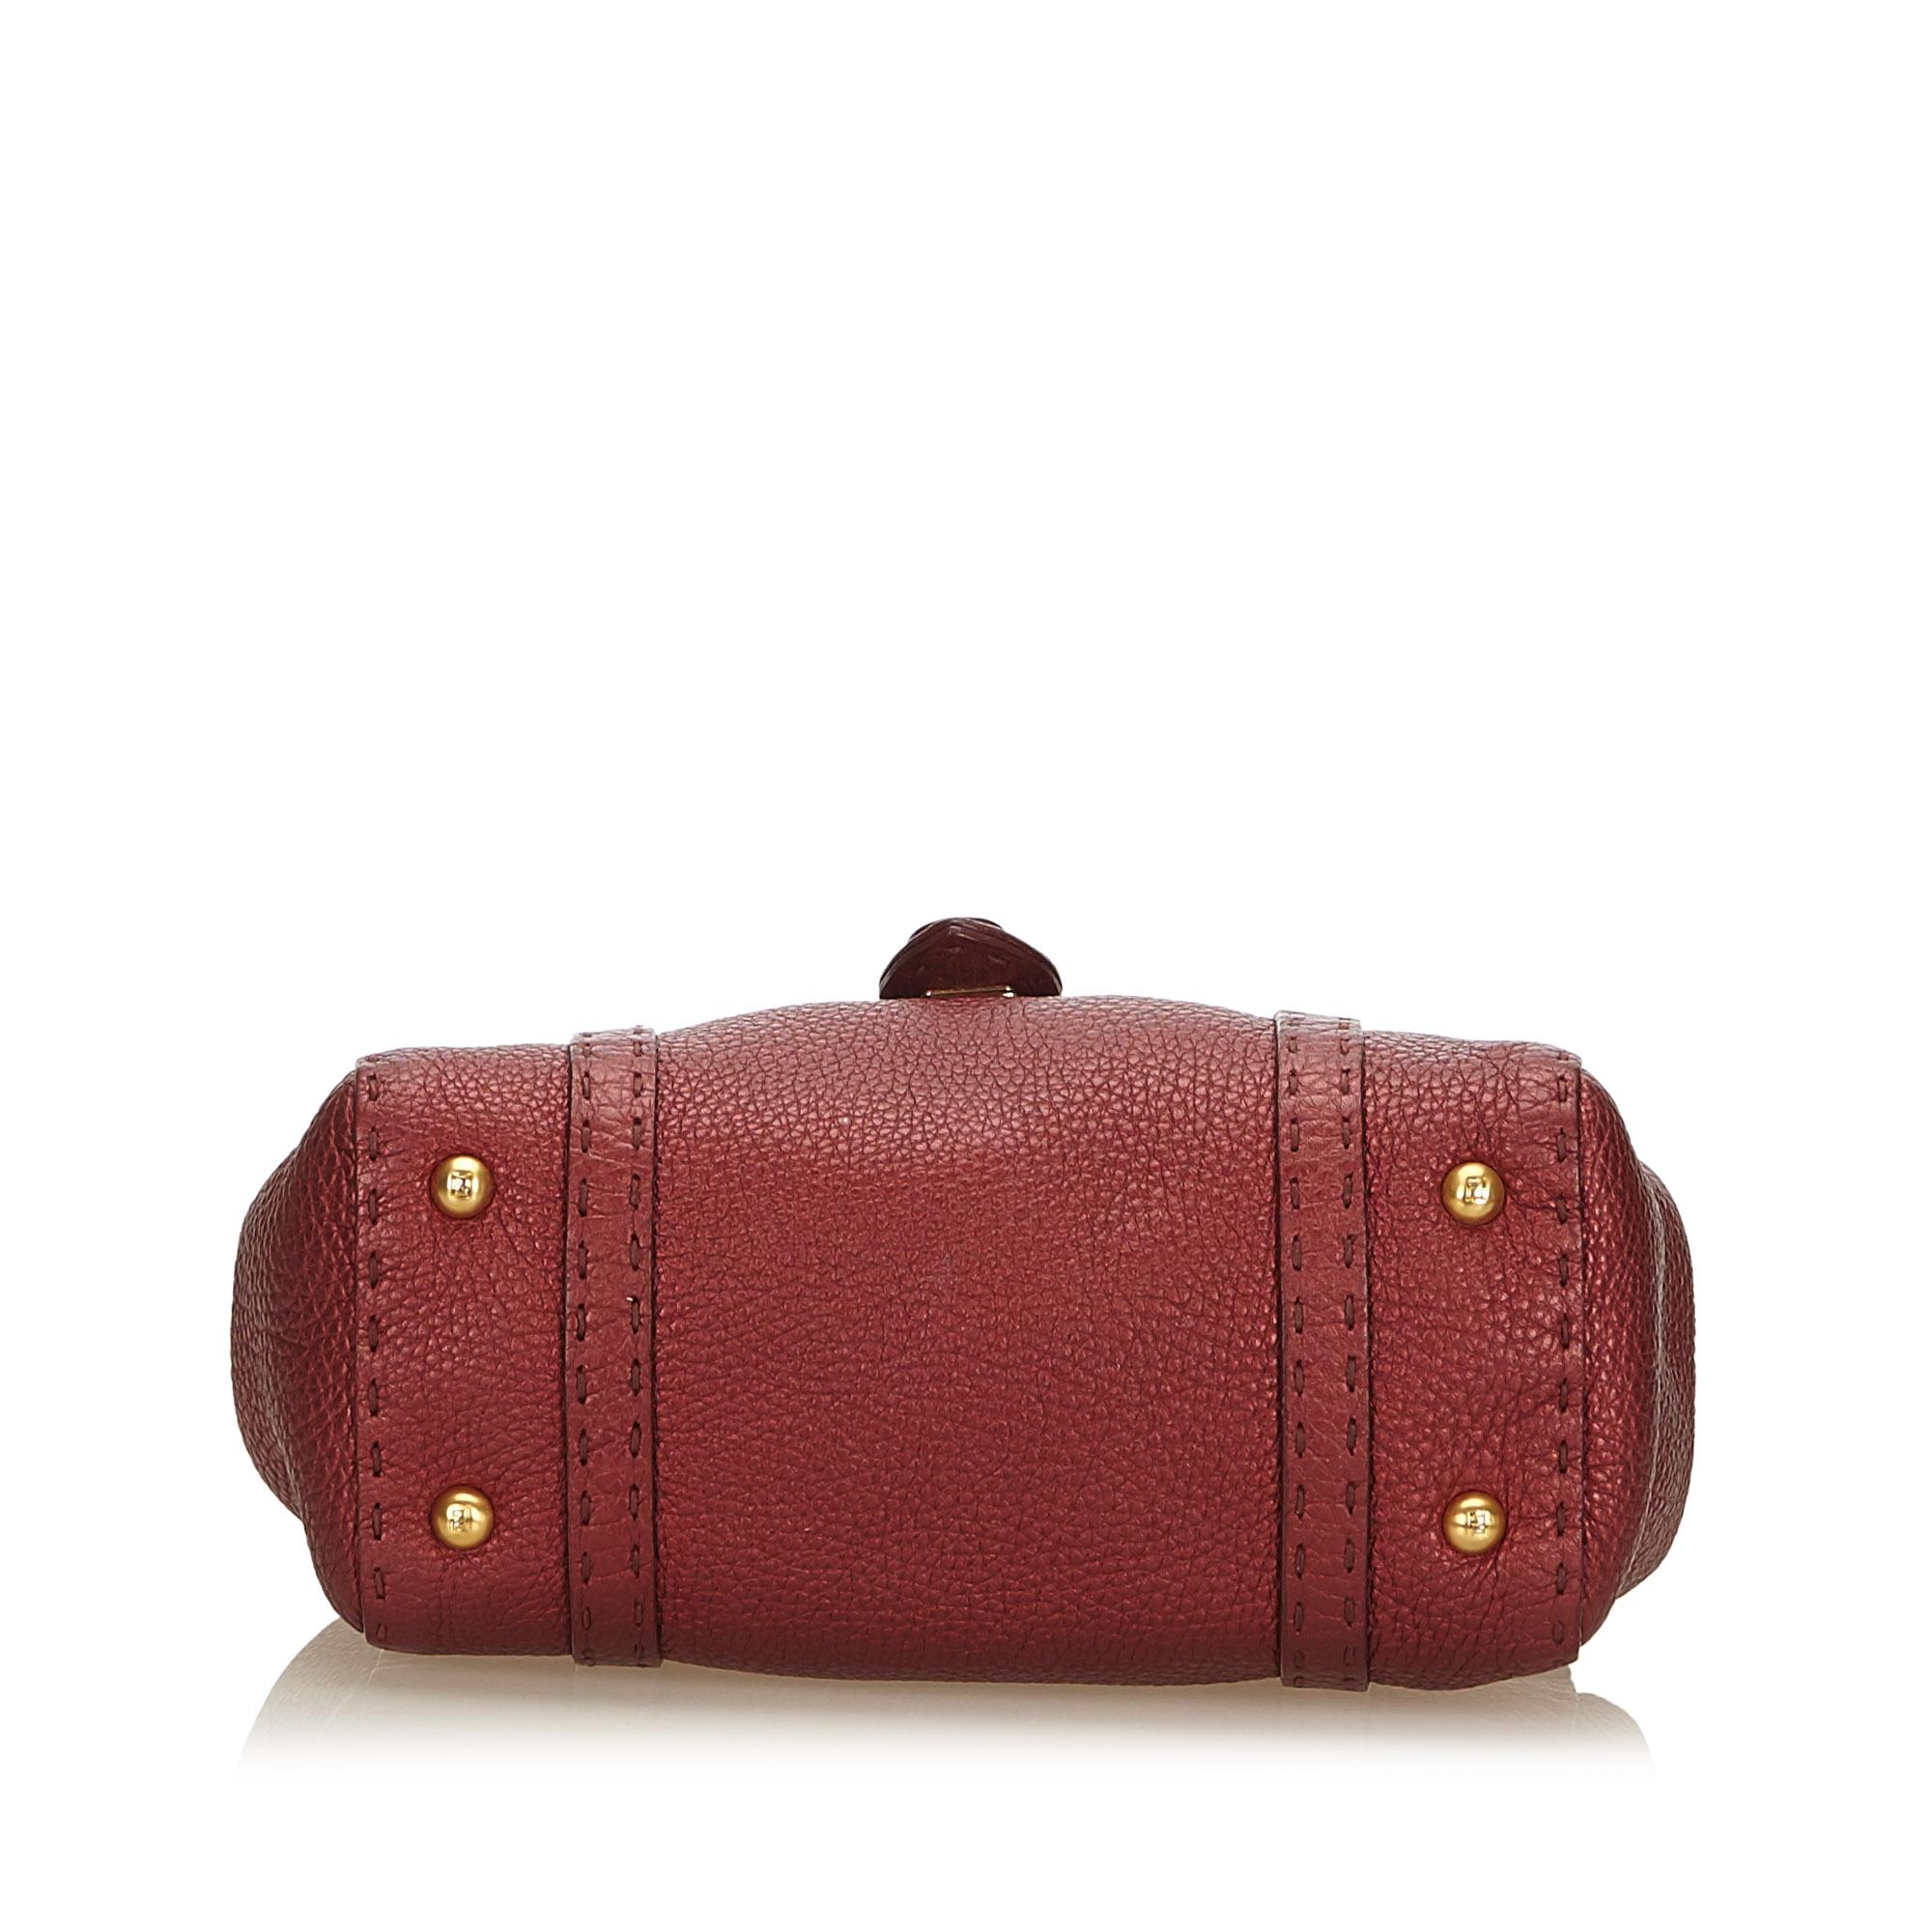 Fendi Red and Bordeau Mini Linda Handbag In Good Condition For Sale In Orlando, FL